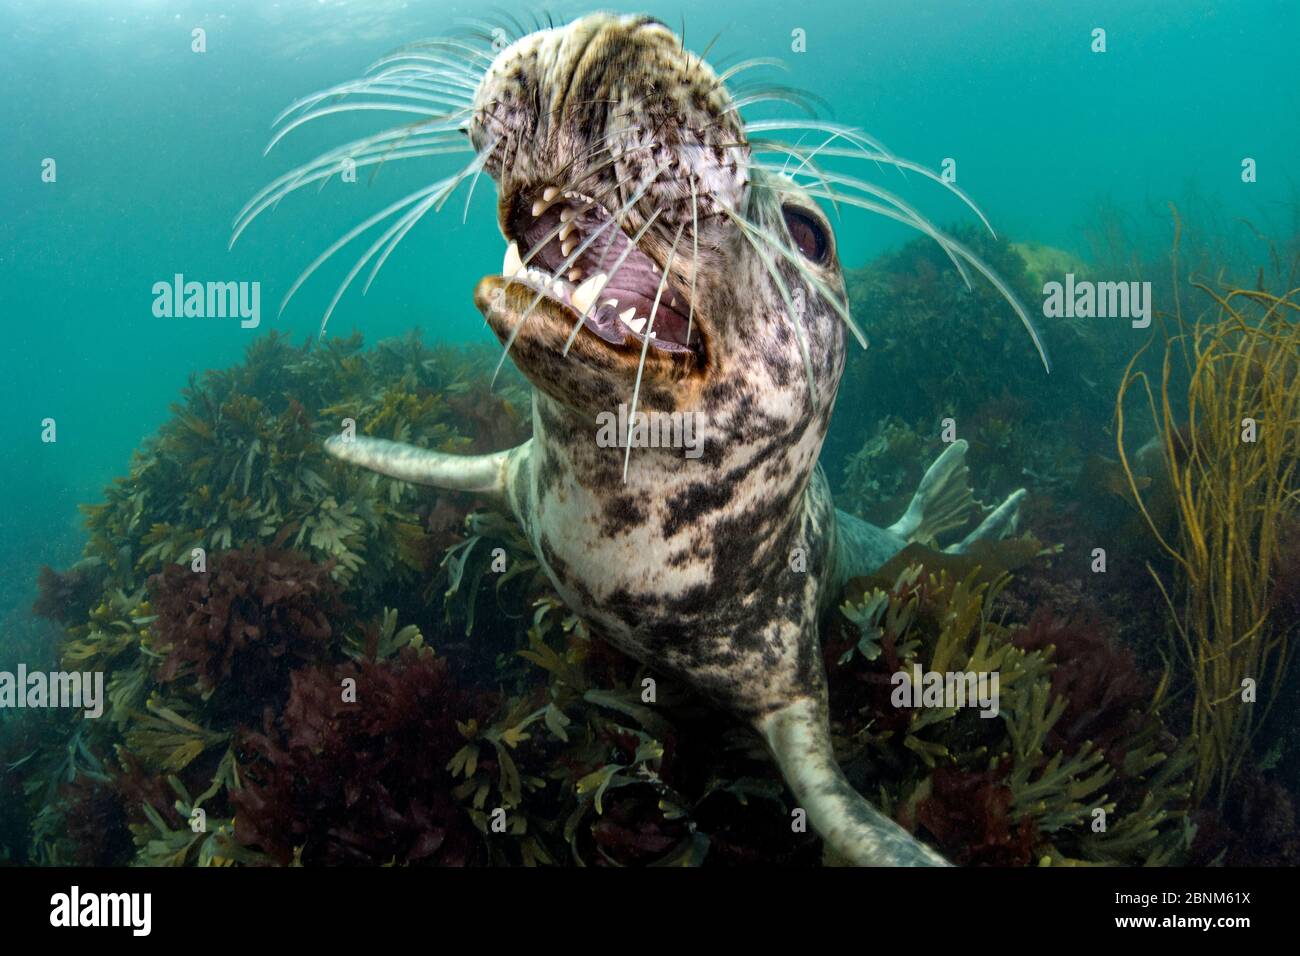 La jeune femelle de phoque gris (Haichaoerus grypus) ouvre la bouche en jeu alors qu'elle regarde d'un lit d'algues peu profondes (Fucus serratus) Lundy Island, Banque D'Images